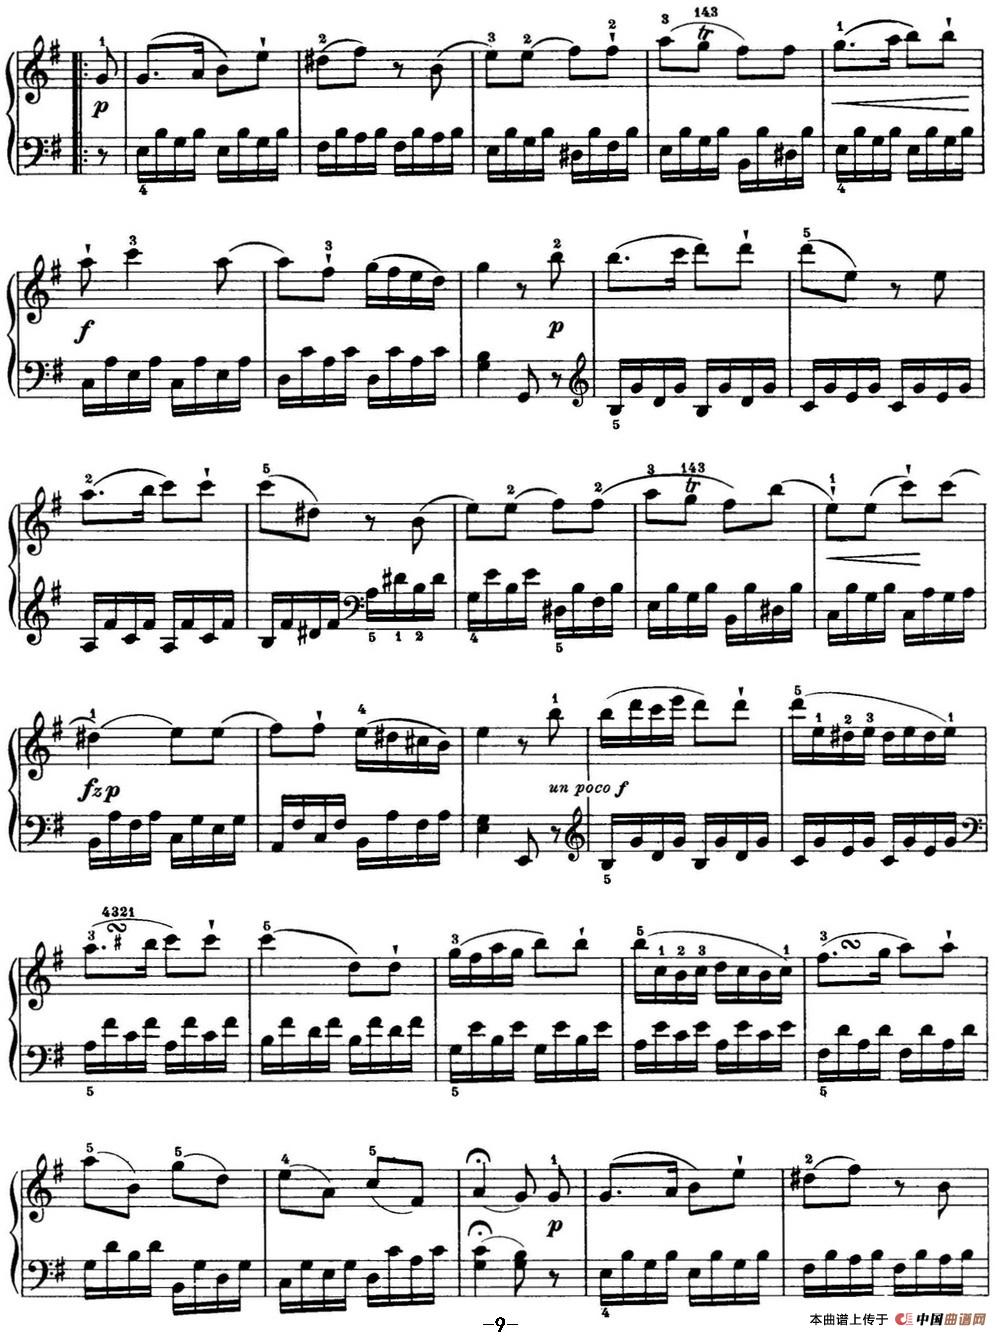 [钢琴谱] 海顿 钢琴奏鸣曲 hob xvi 34 in e minor